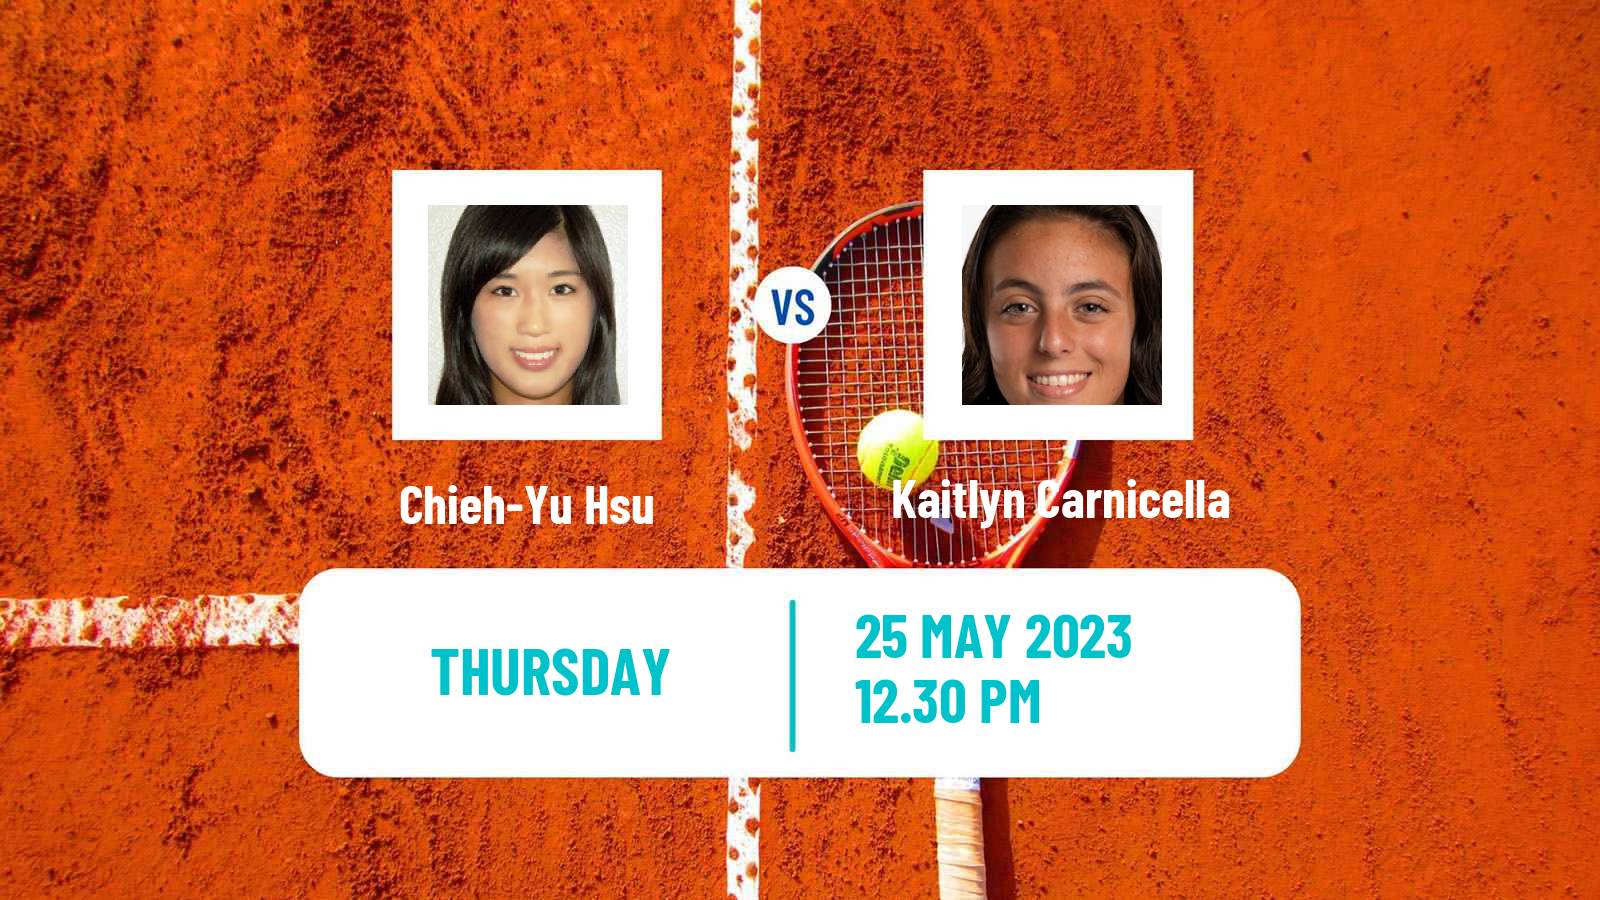 Tennis ITF W15 Huntsville Al Women Chieh-Yu Hsu - Kaitlyn Carnicella